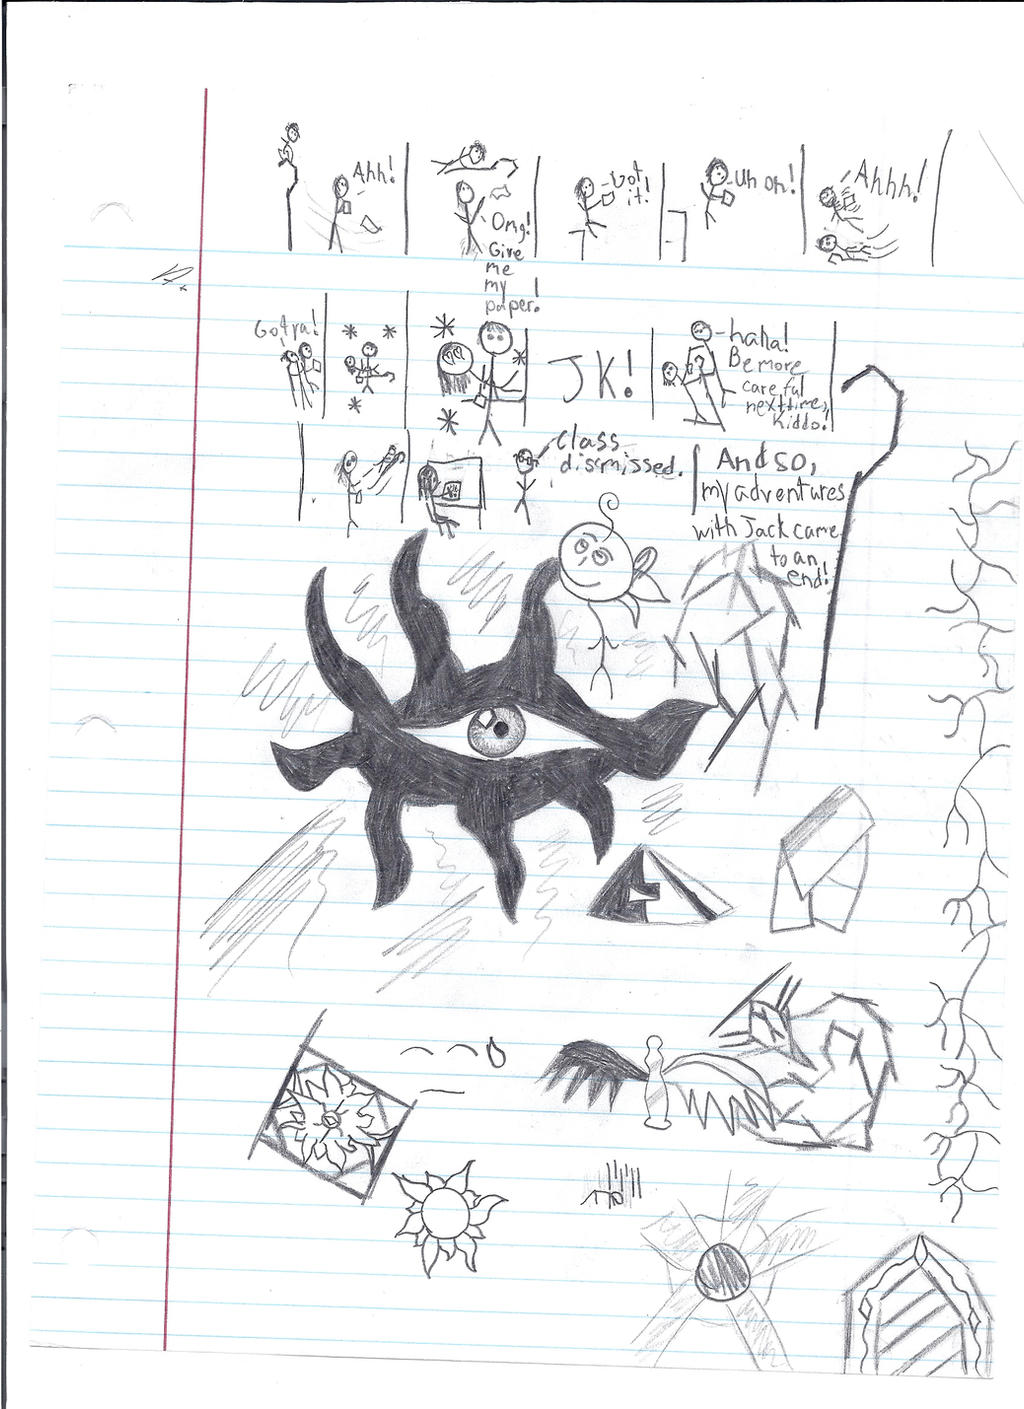 Random Psychology Doodles (Includes Jack Frost!)